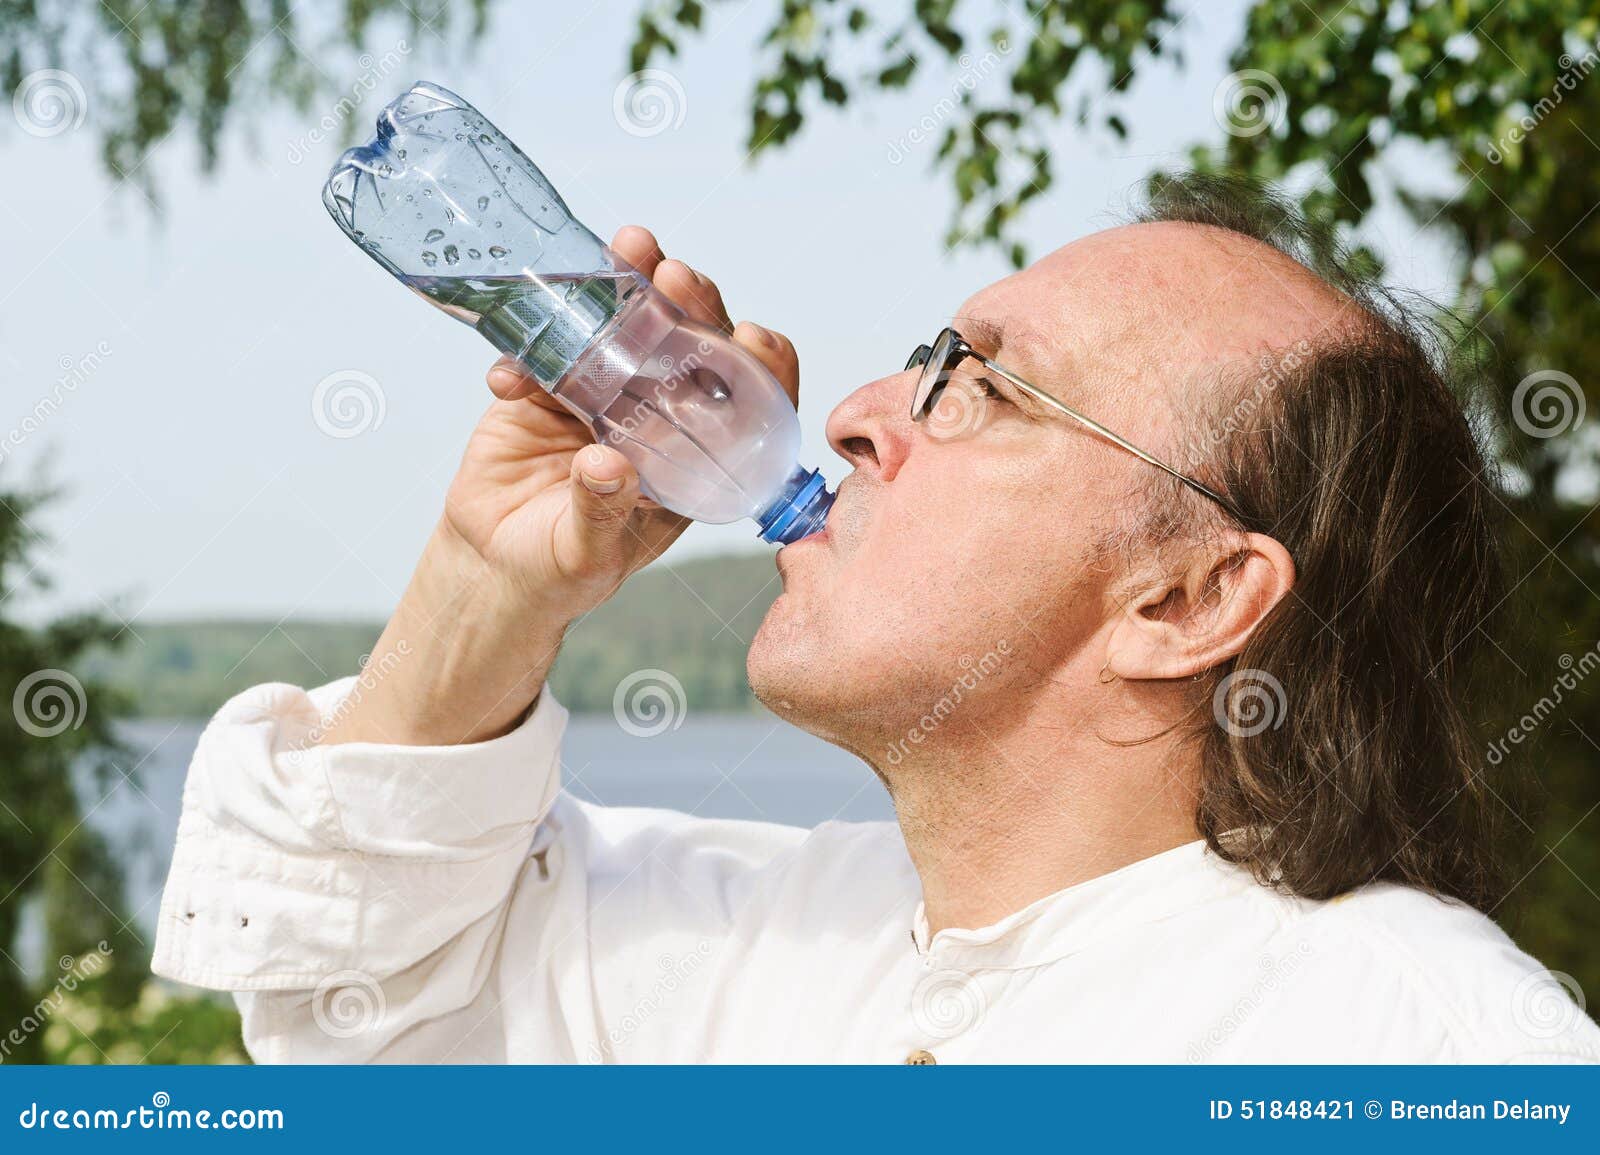 Пить подсоленную воду. Дед пьет воду. Пожилые пьют воду. Дедушка пьет воду. Дед пьет воду из бутылки.